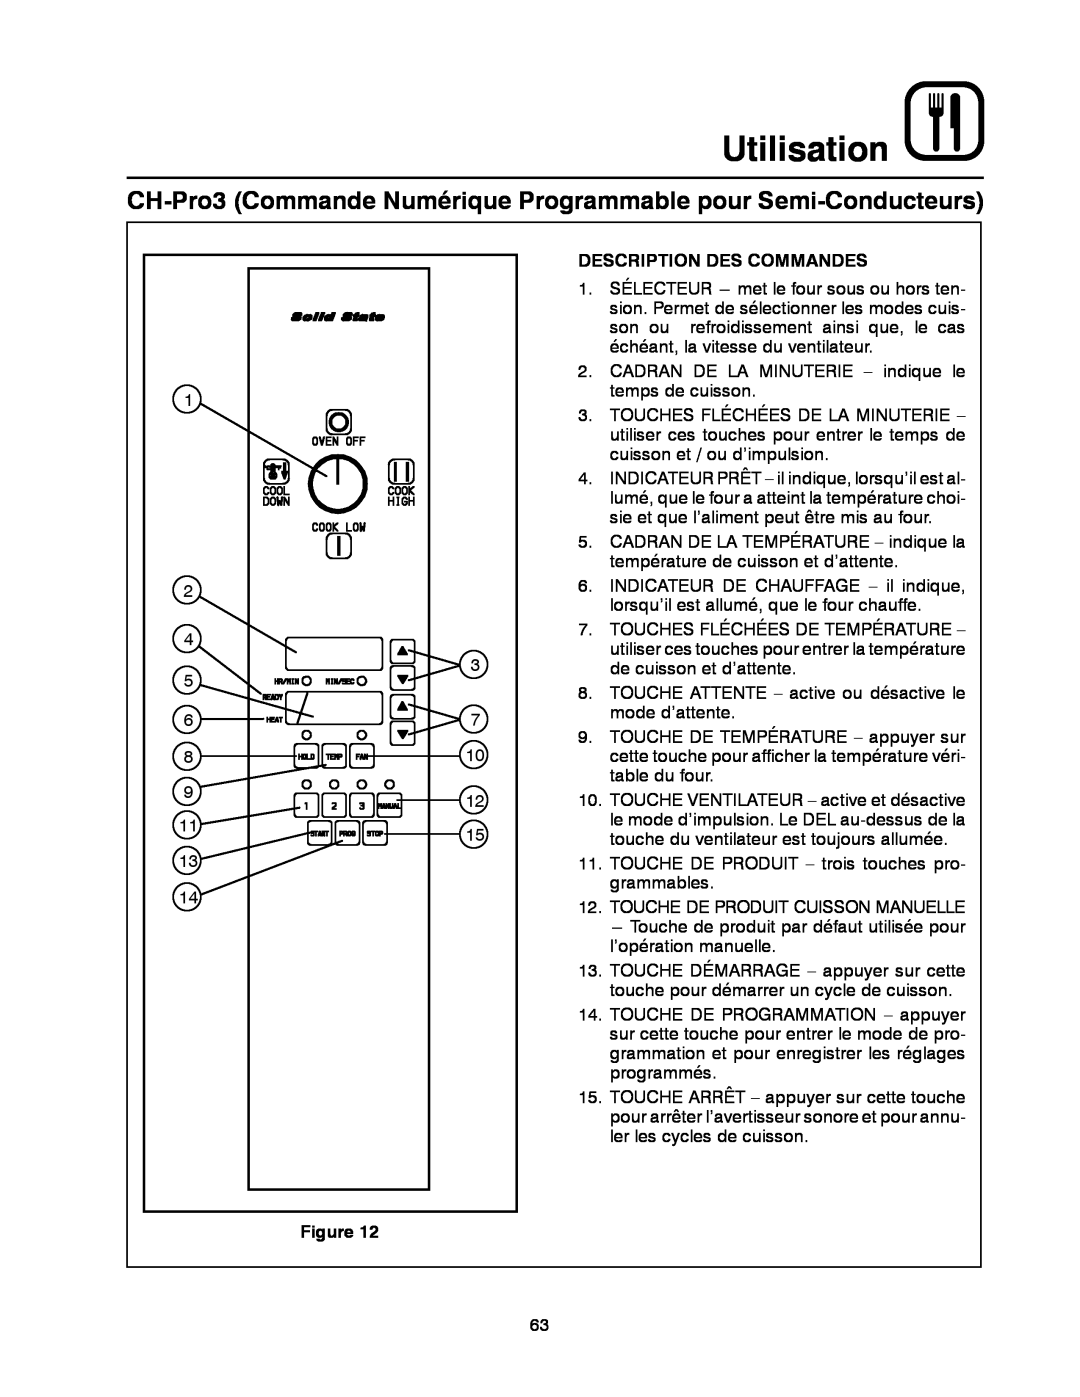 Blodgett DFG-100 CH-Pro3 Commande Numérique Programmable pour Semi-Conducteurs, Utilisation, Description Des Commandes 